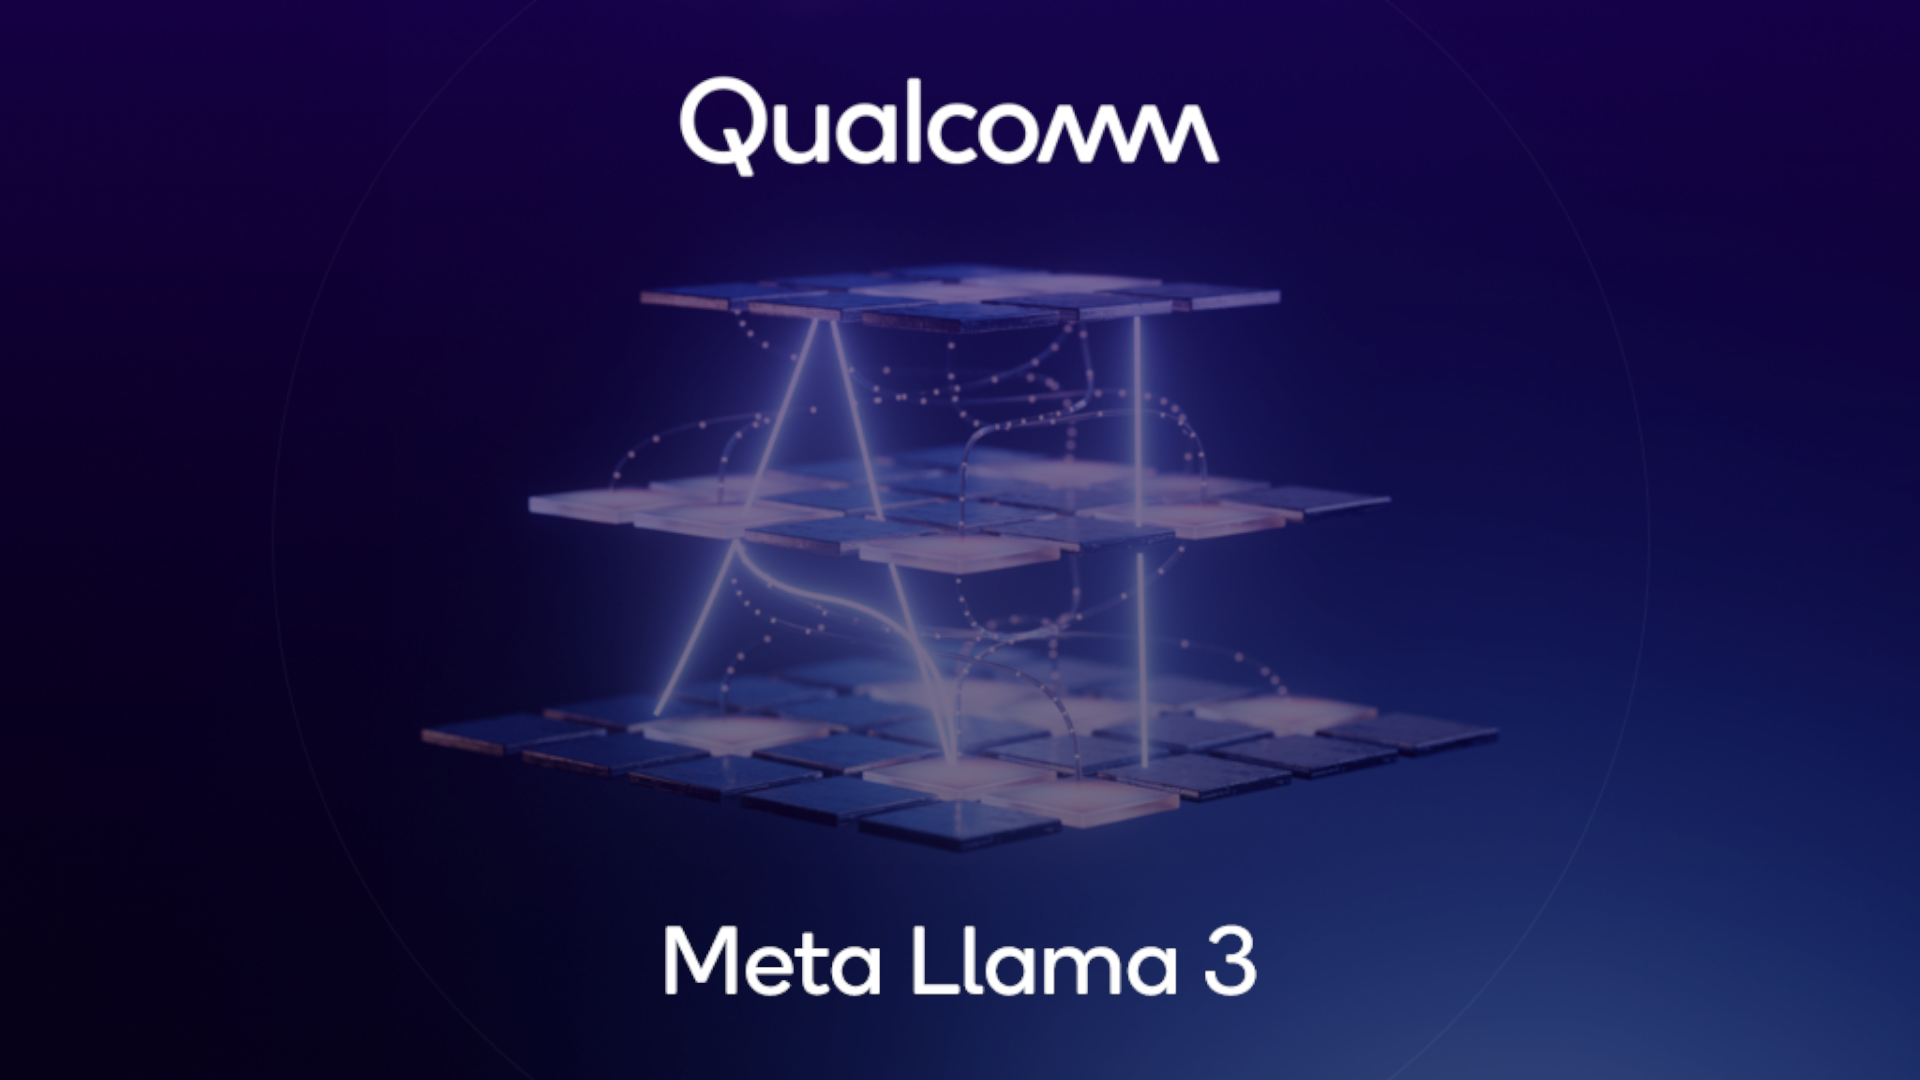 Qualcomm e Meta insieme per portare Llama 3 sui dispositivi con Snapdragon